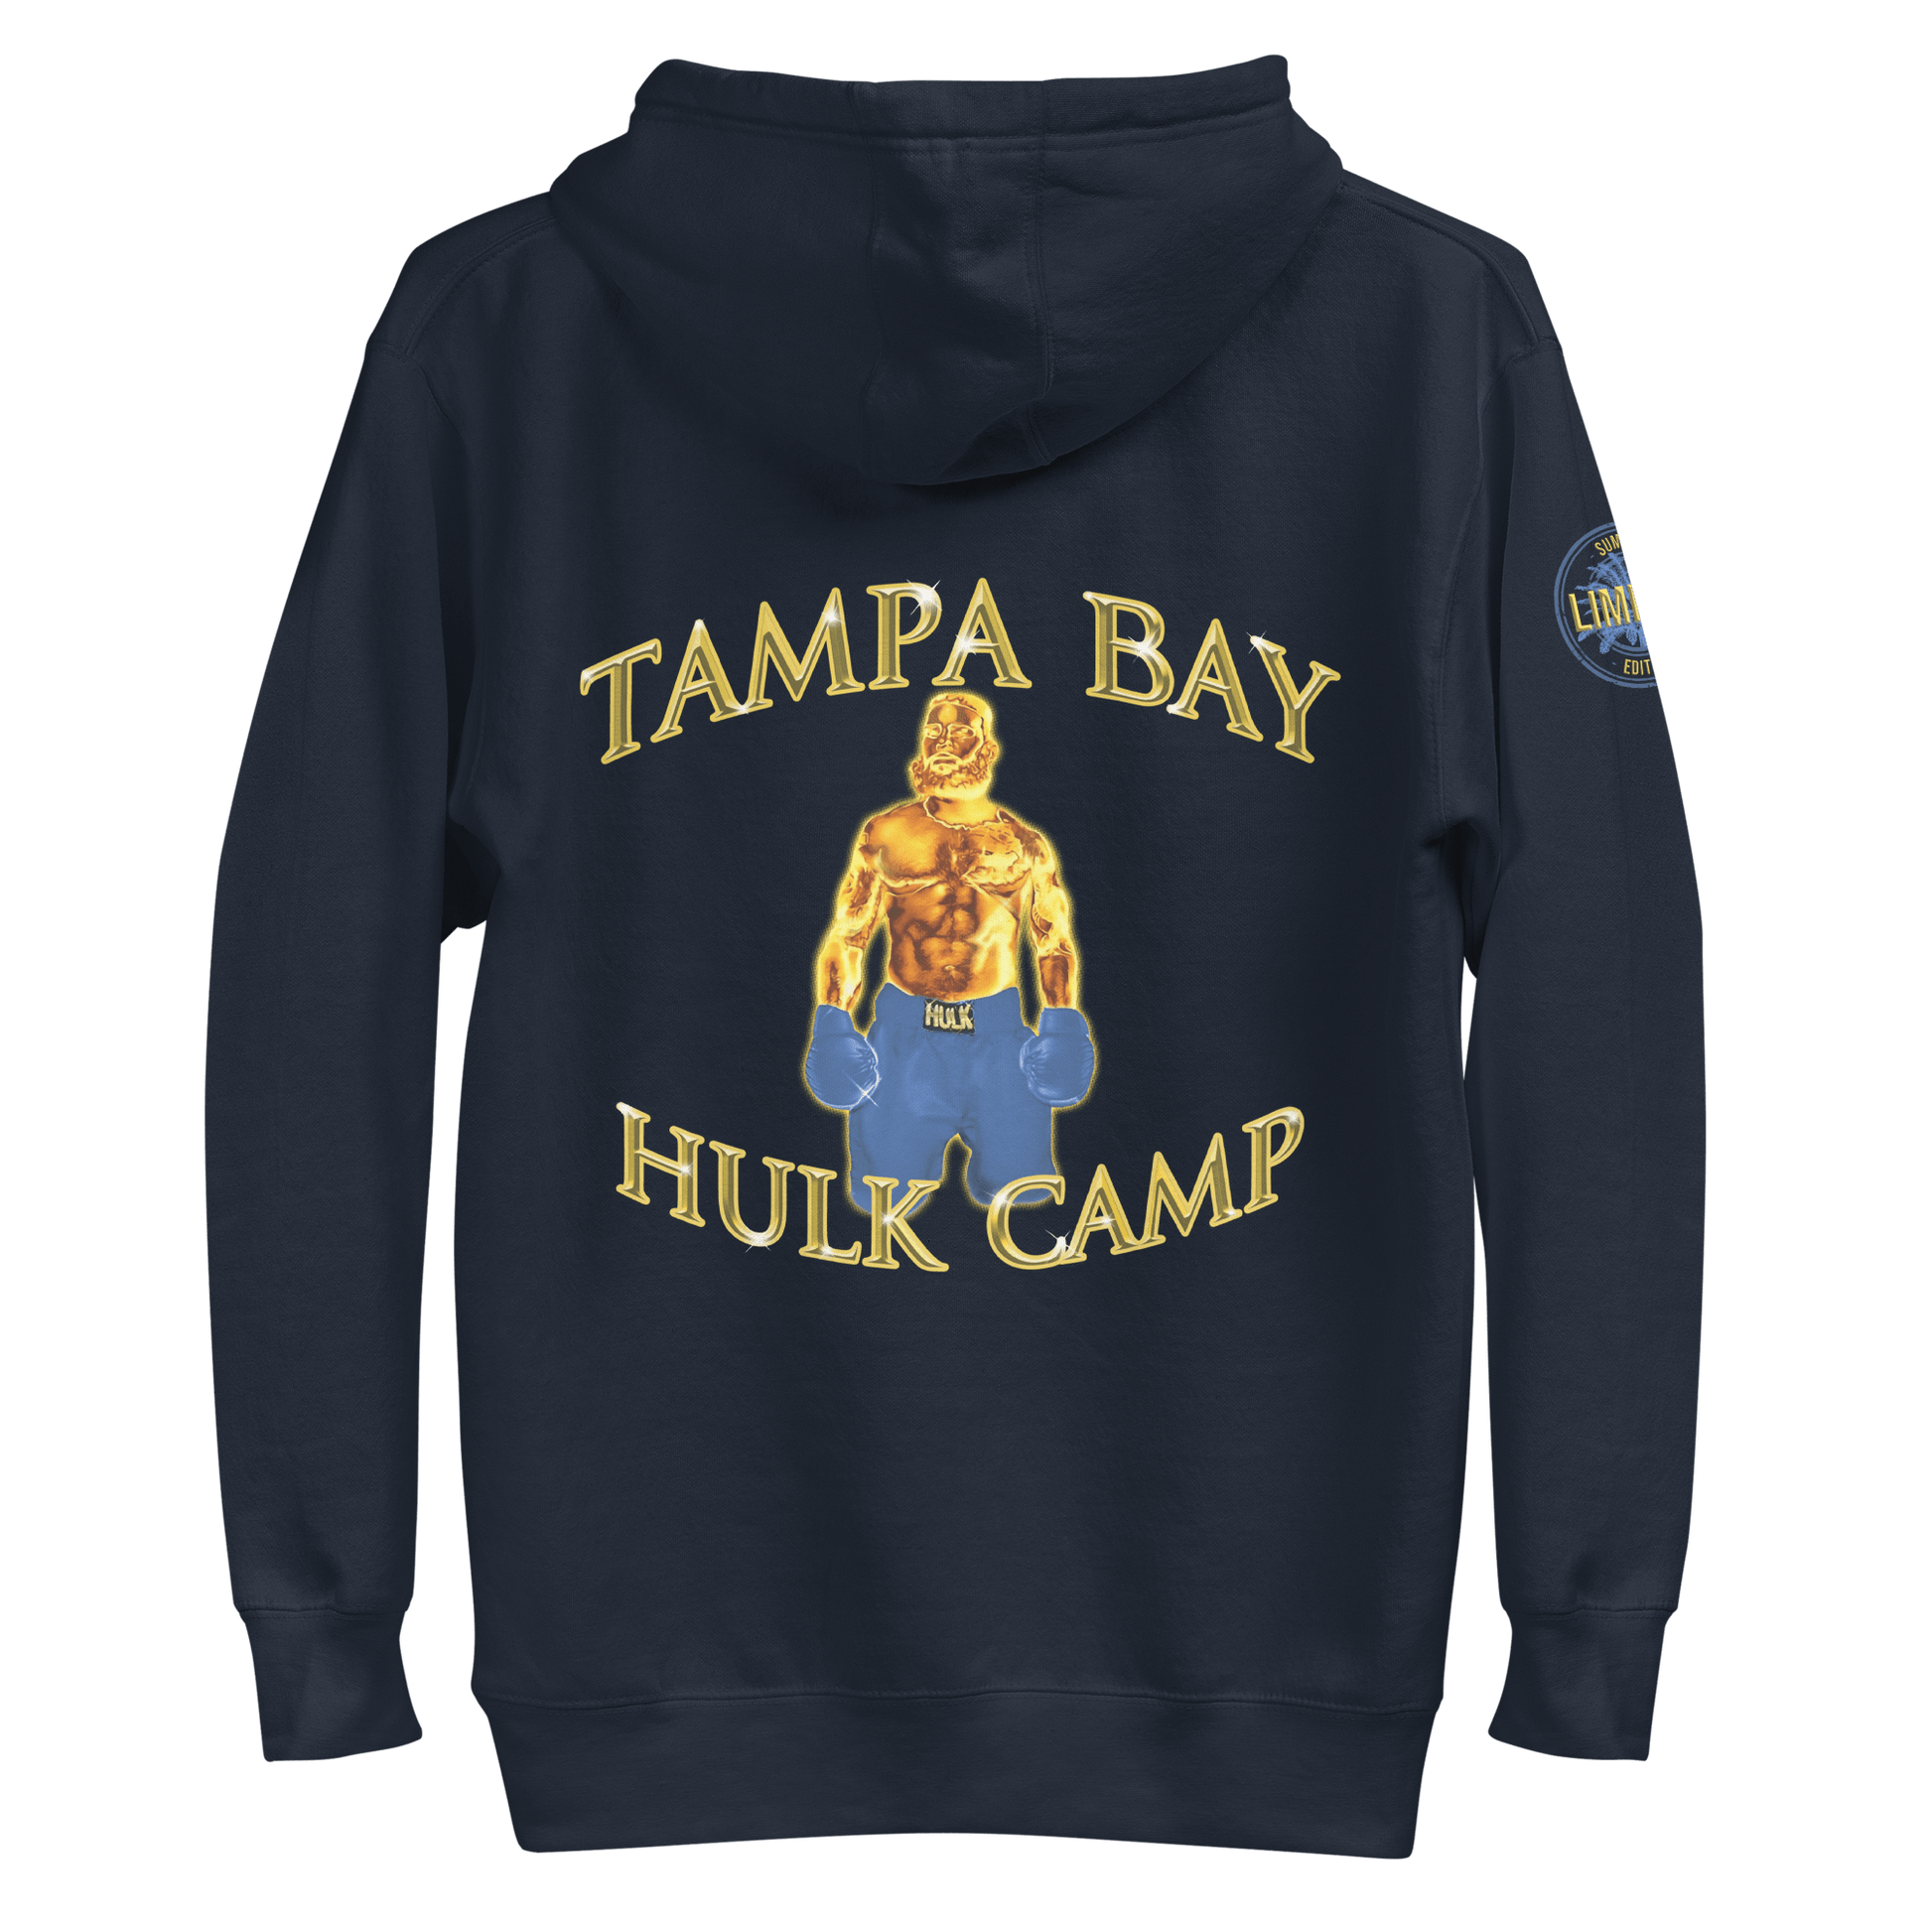 Tampa Bay Hulk Camp | Premium Cotton Hoodie Summer Edition - Clutch -